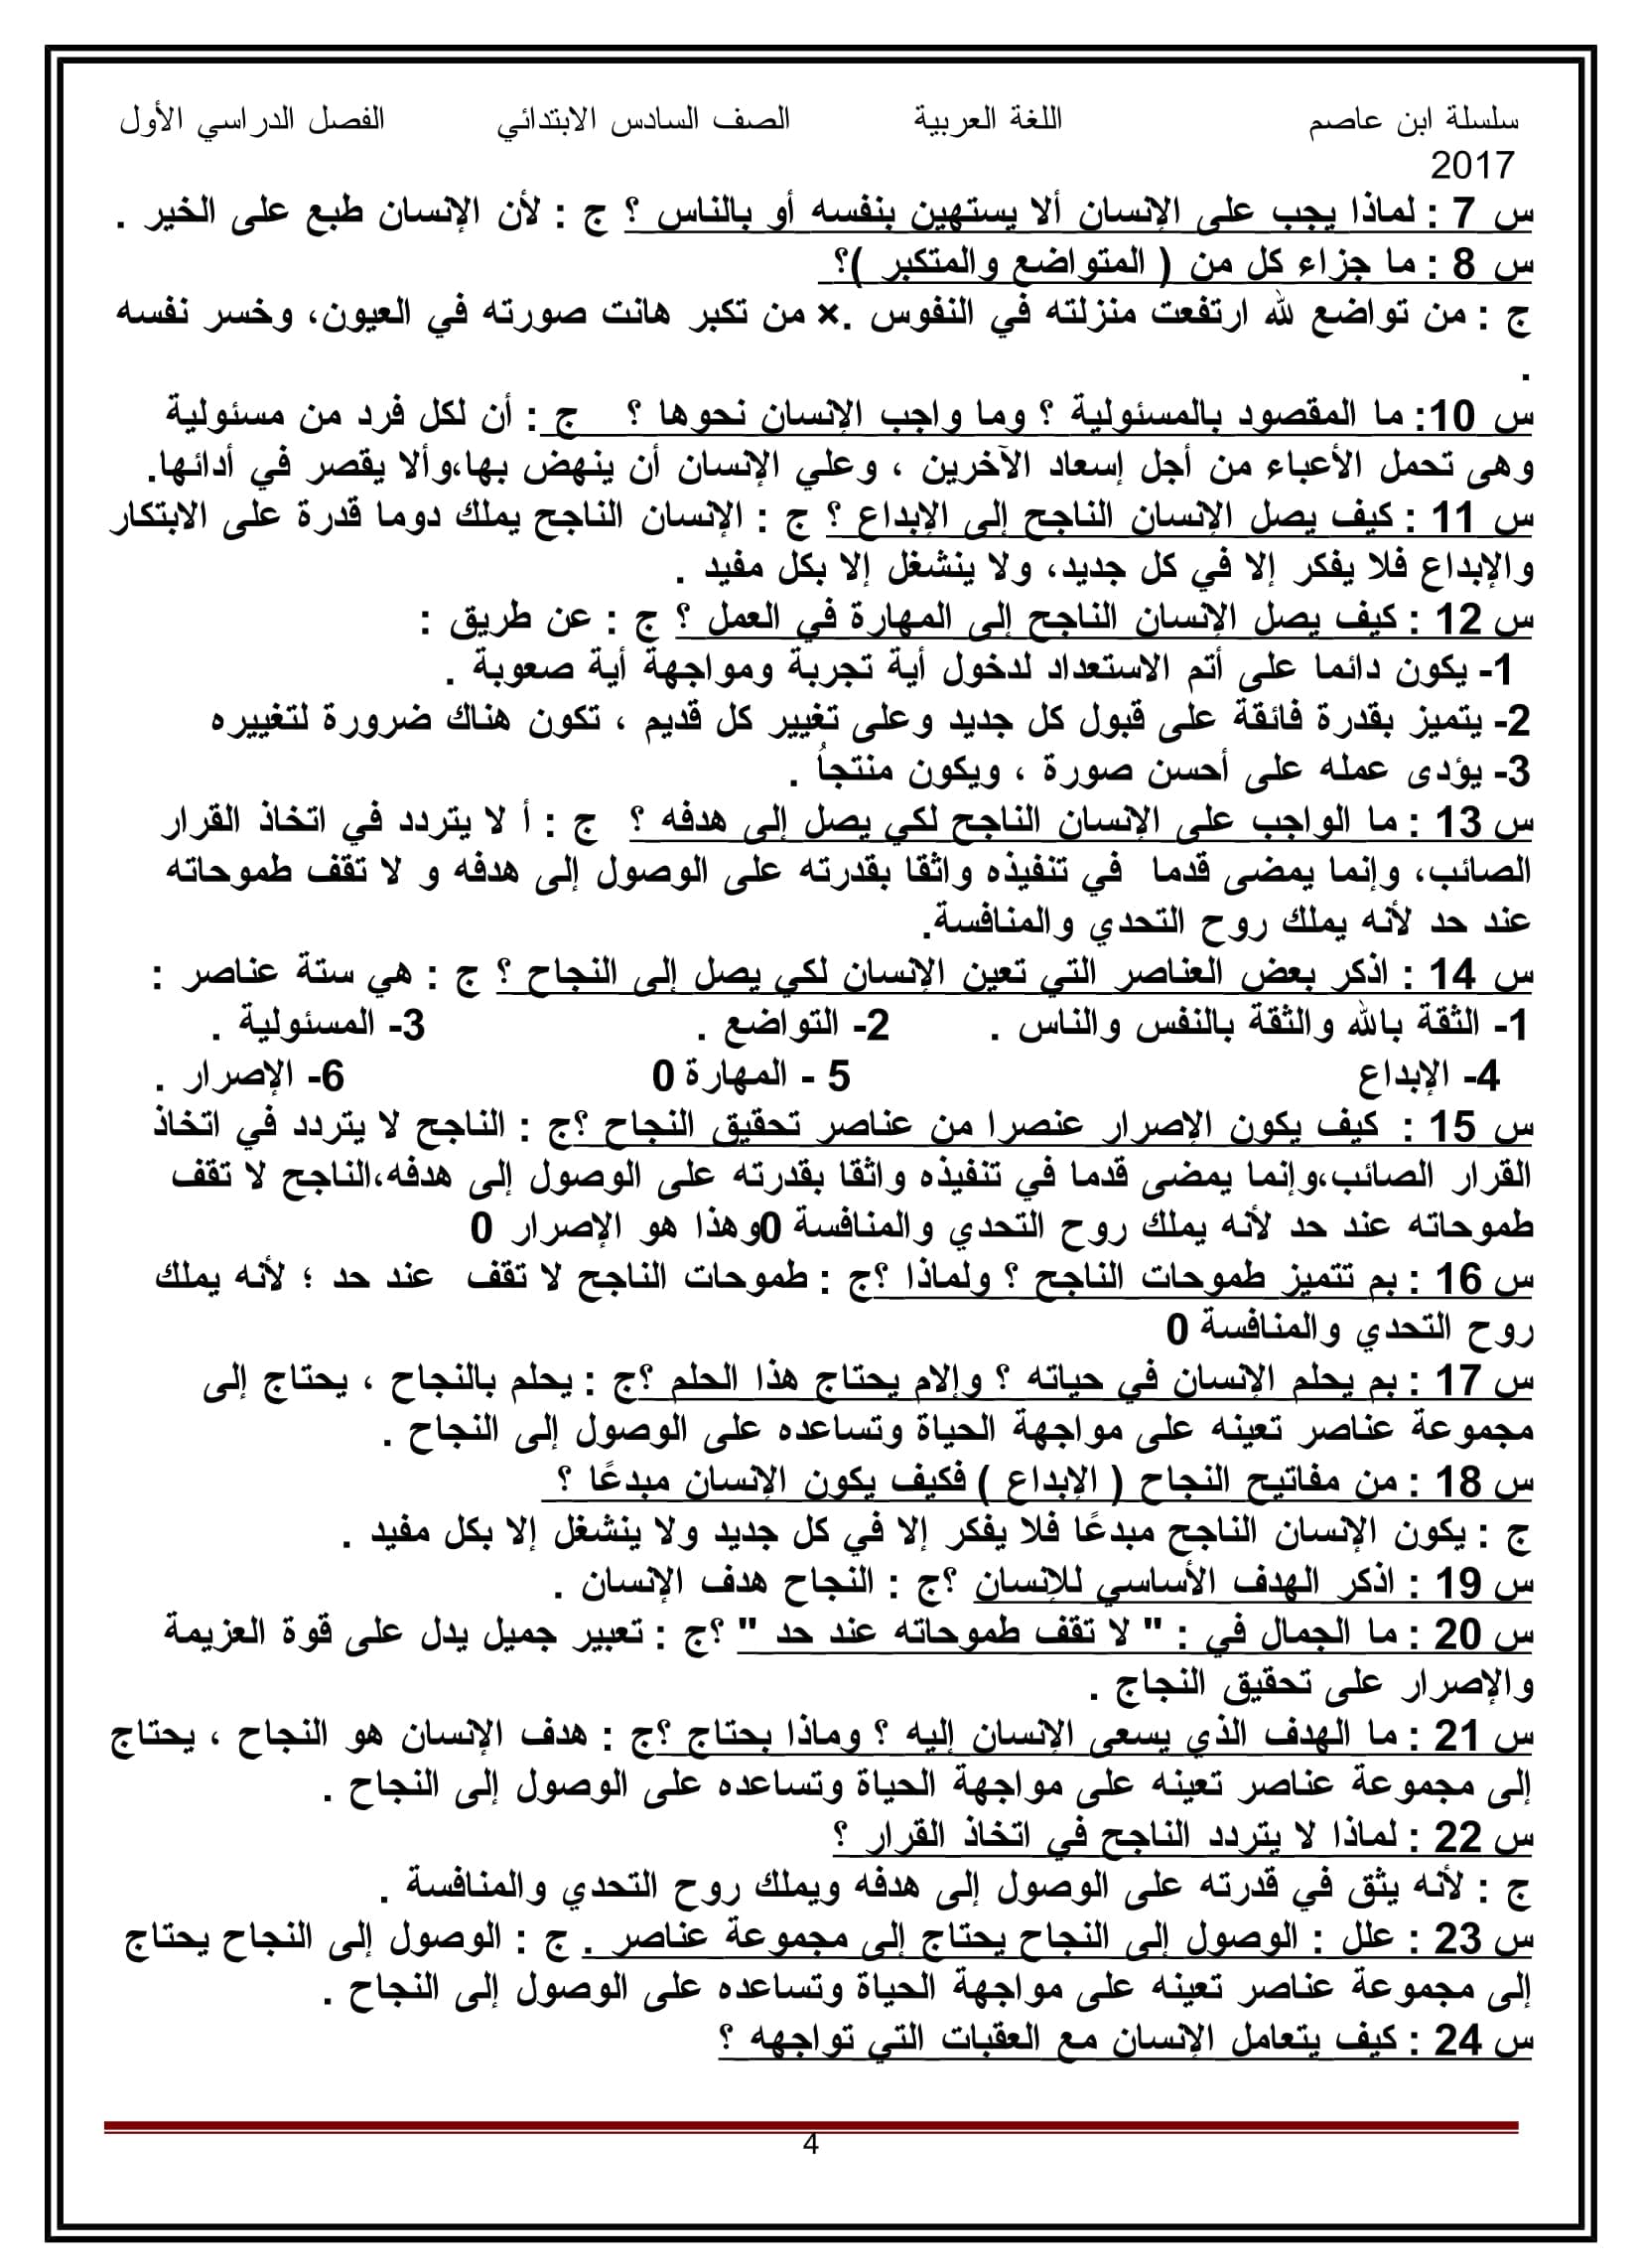 مذكرة ابن عاصم لمراجعة اللغة العربية للصف السادس الابتدائى الترم الاول